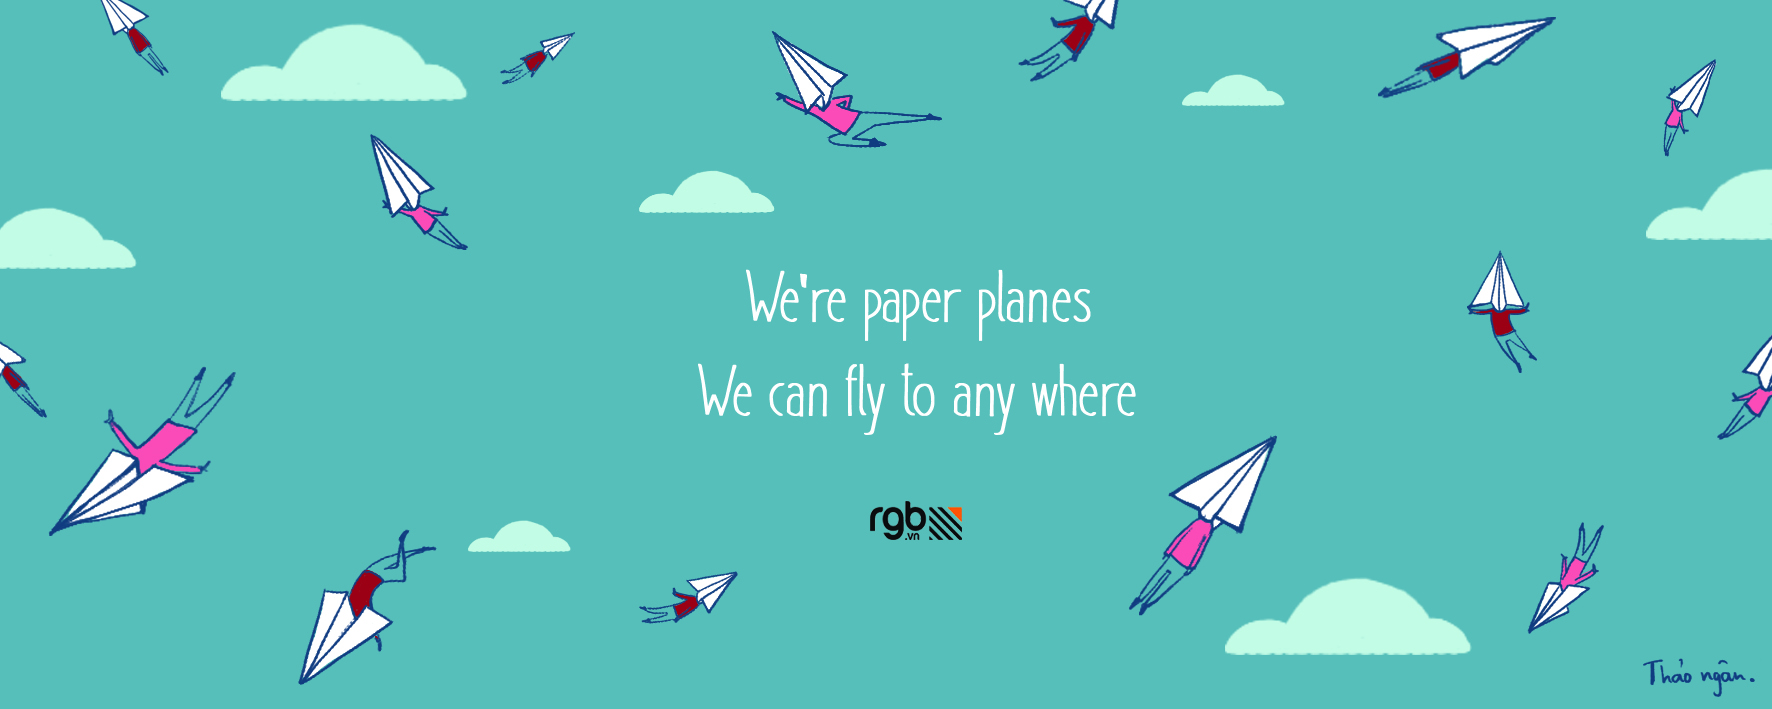 rgb_tranthungan_13_mock_paperplanes